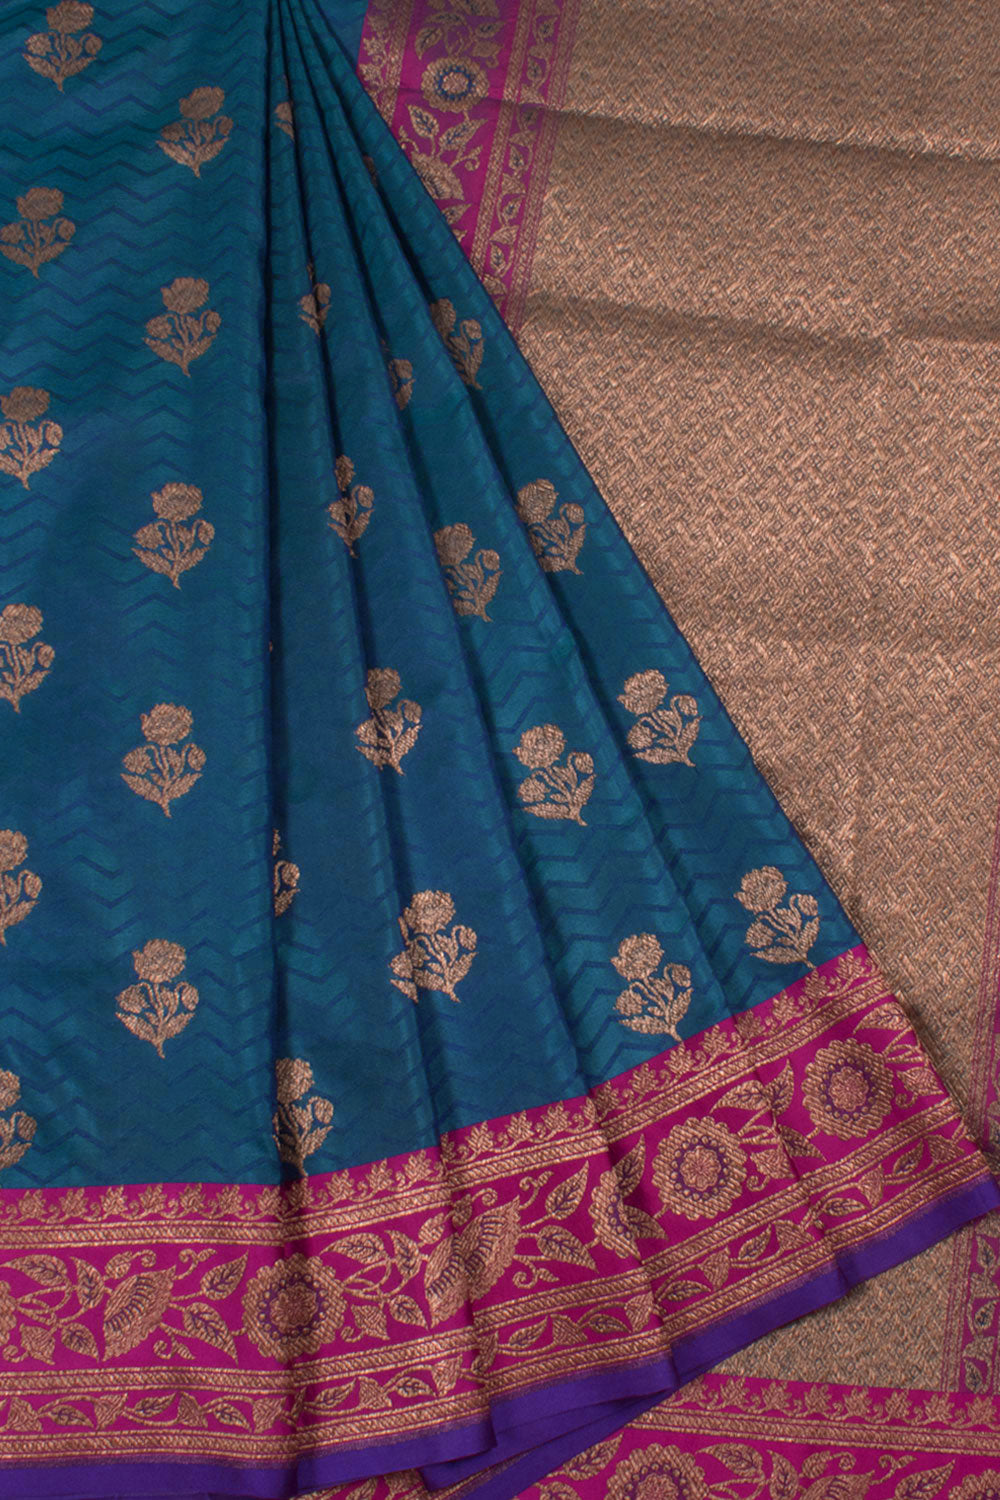 Handloom Banarasi Katrua Katan Silk Saree with Floral Motifs and Zigzag Design